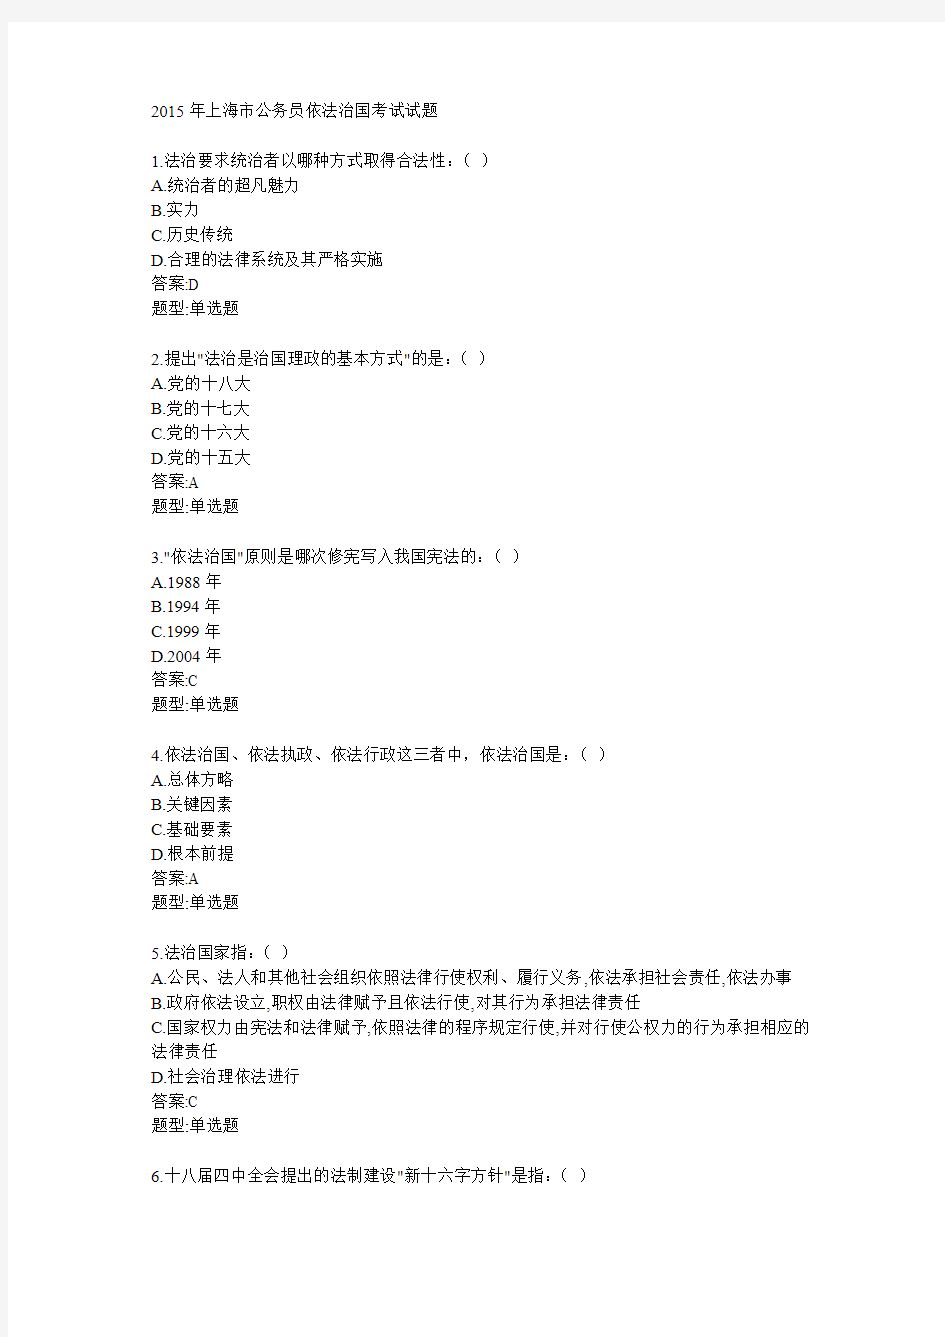 2015年上海市公务员依法治国考试题库(全500题)